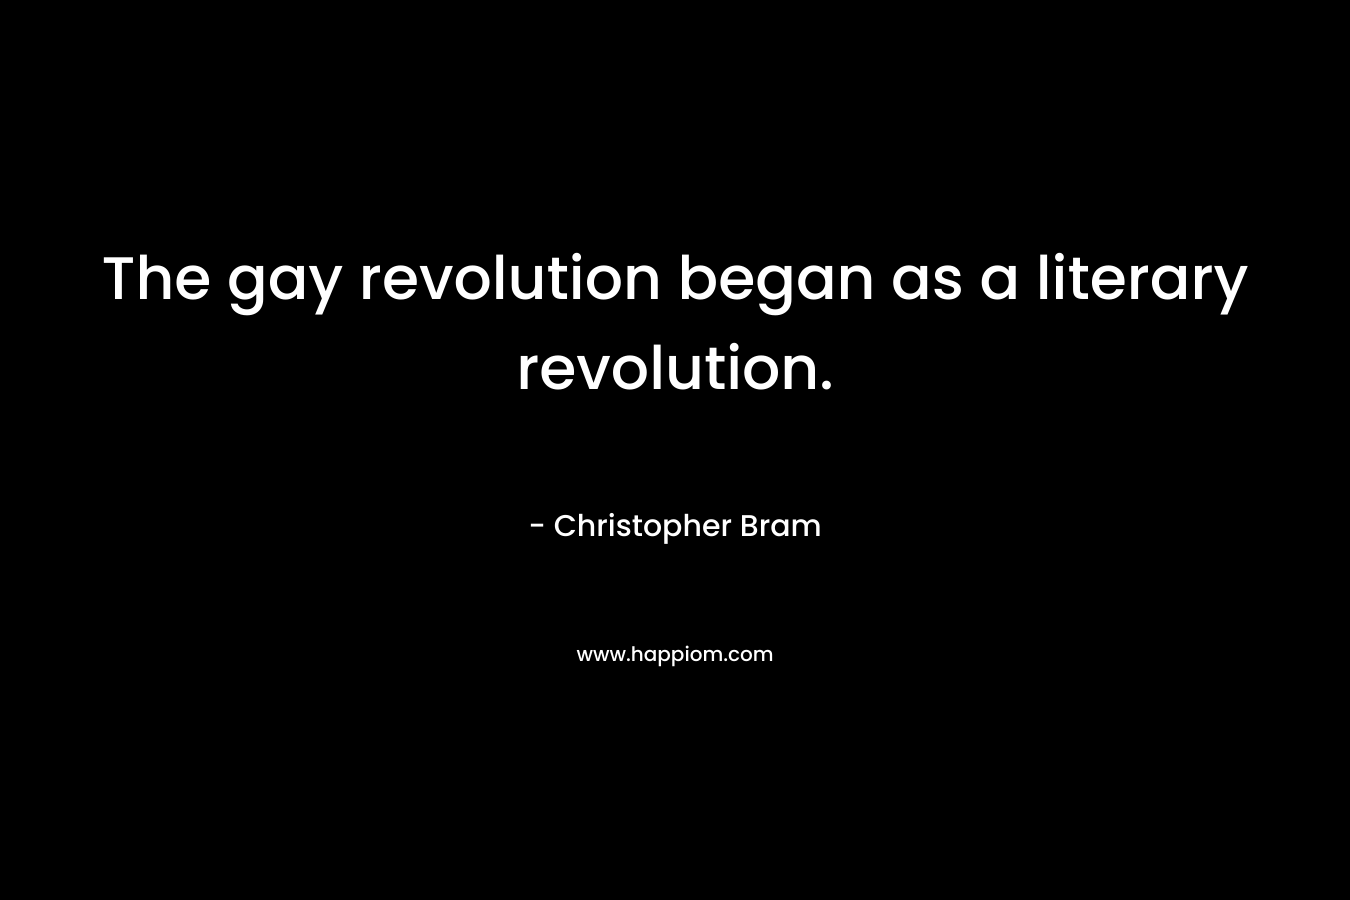 The gay revolution began as a literary revolution.